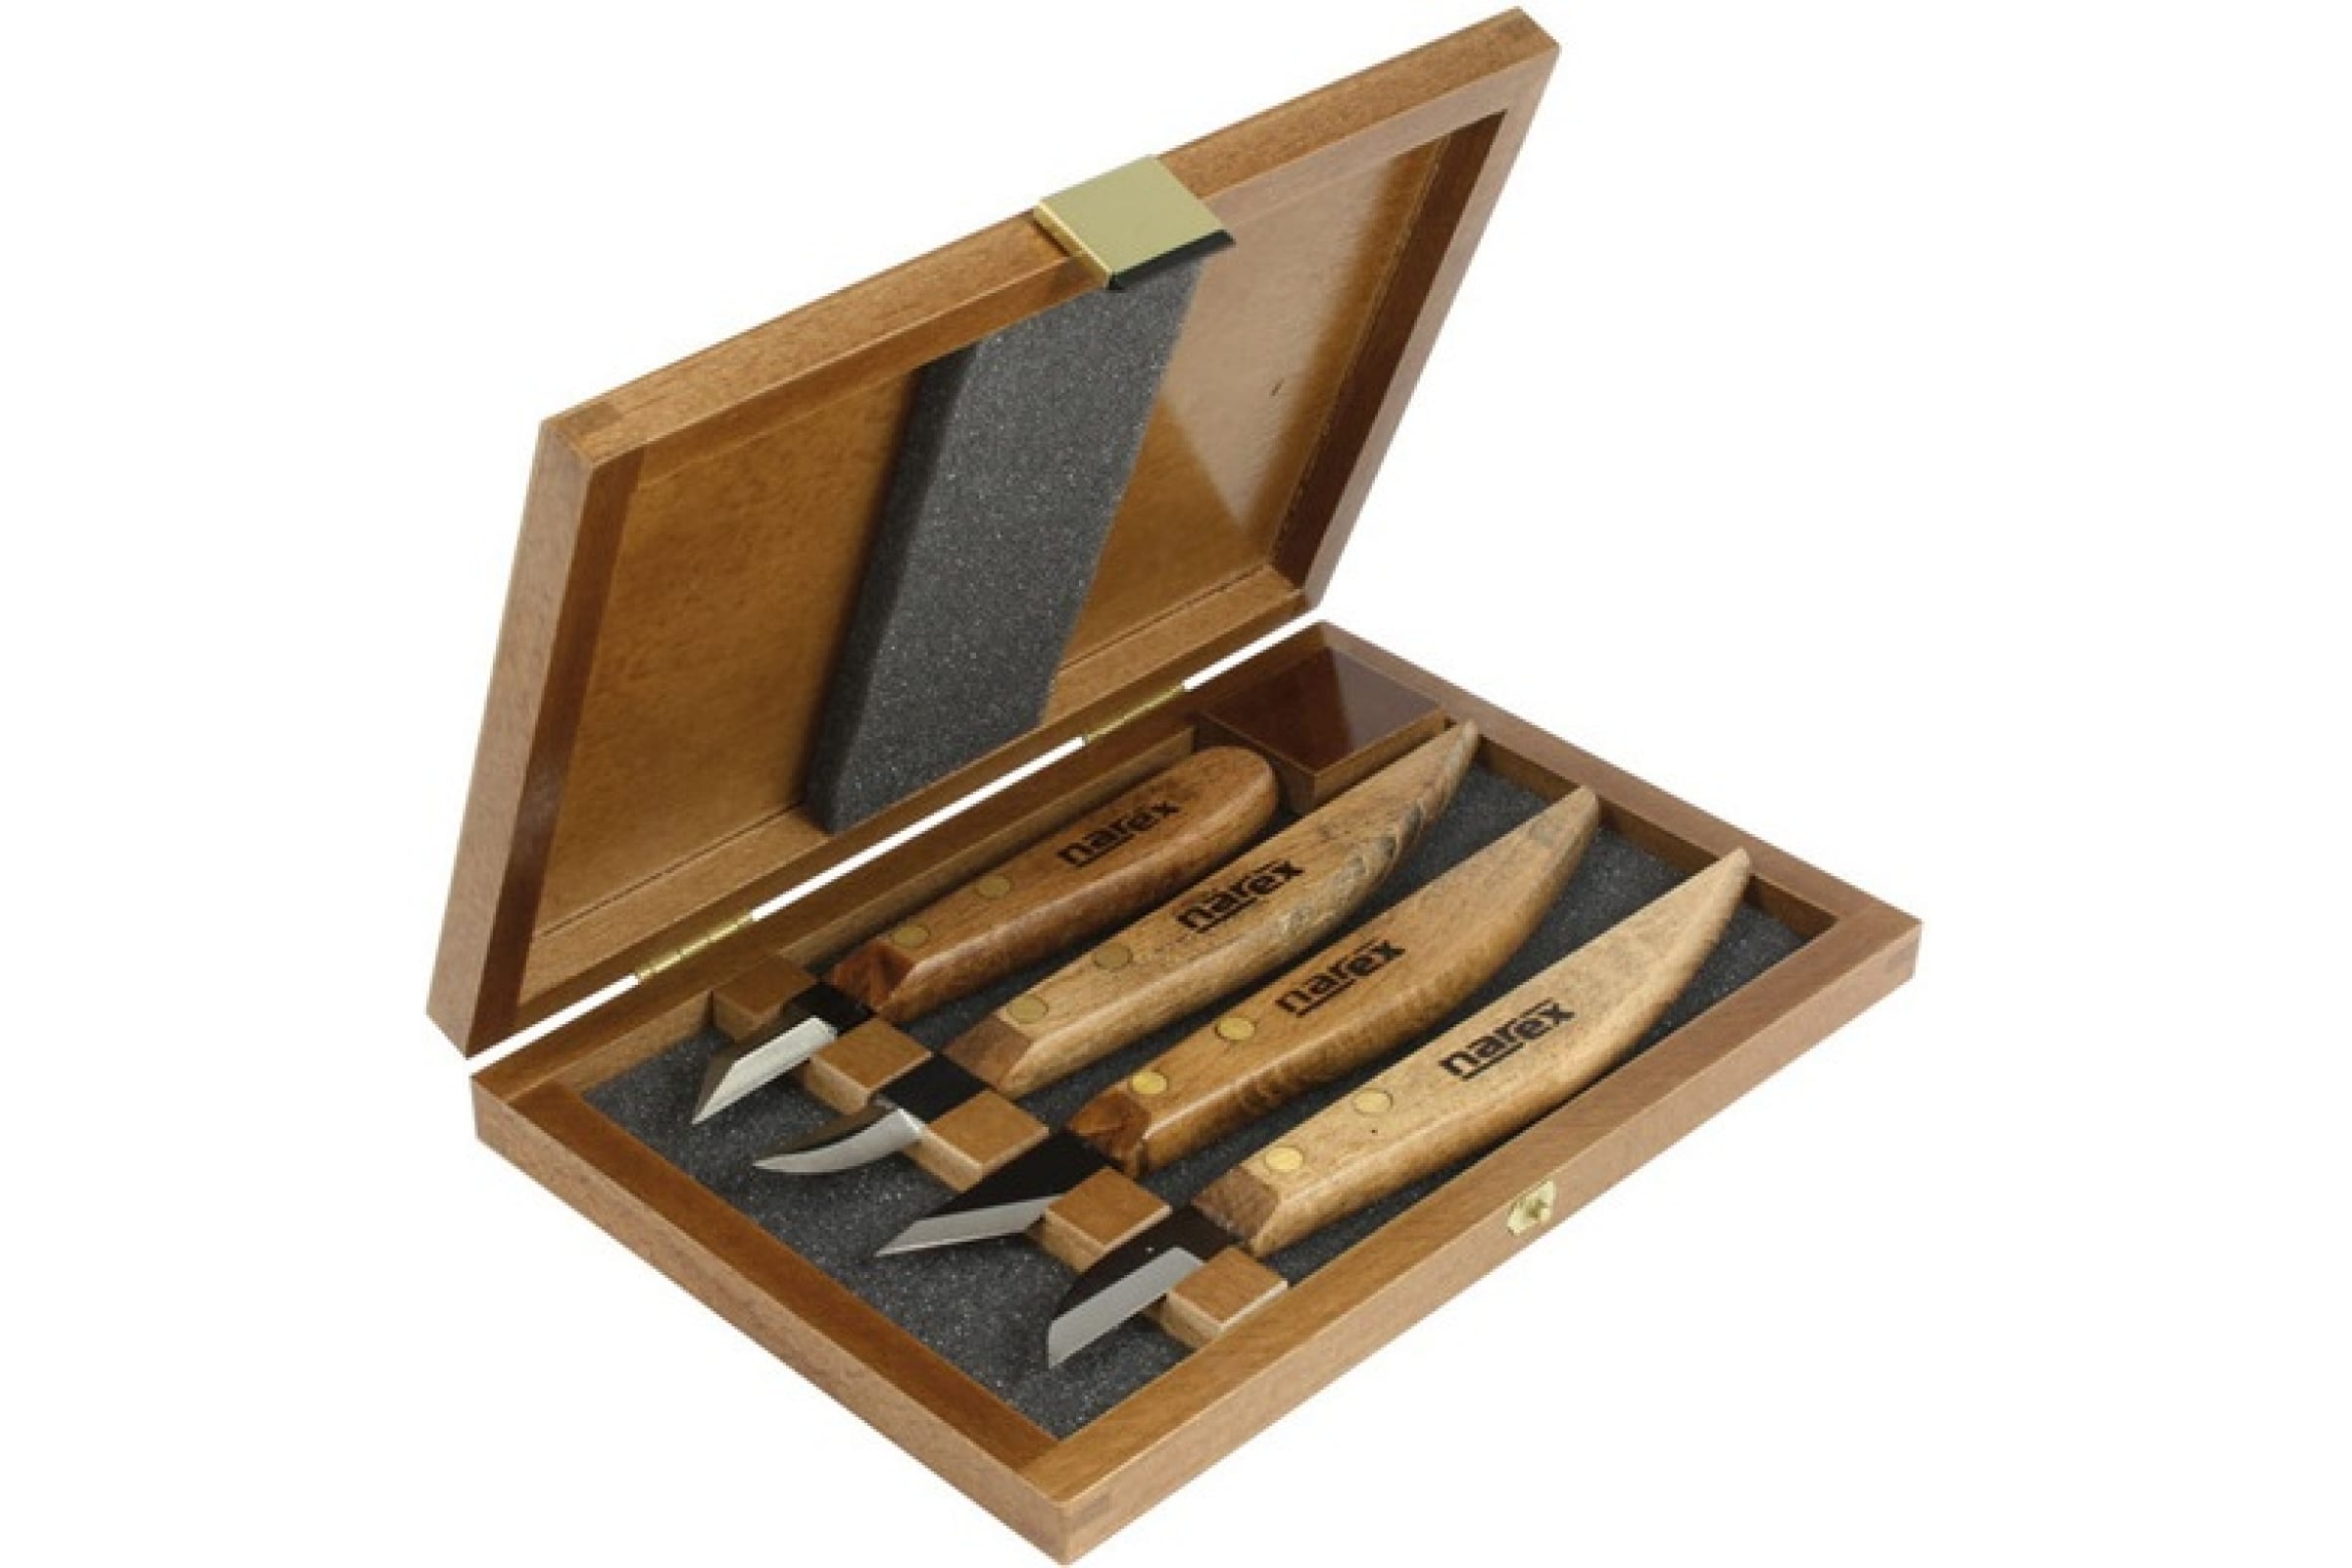 Набор ножей NAREX Profi, арт. 869100 в деревянной коробке, 4 предмета набор ножей с деревянной ручкой 12 шт 20х17 см